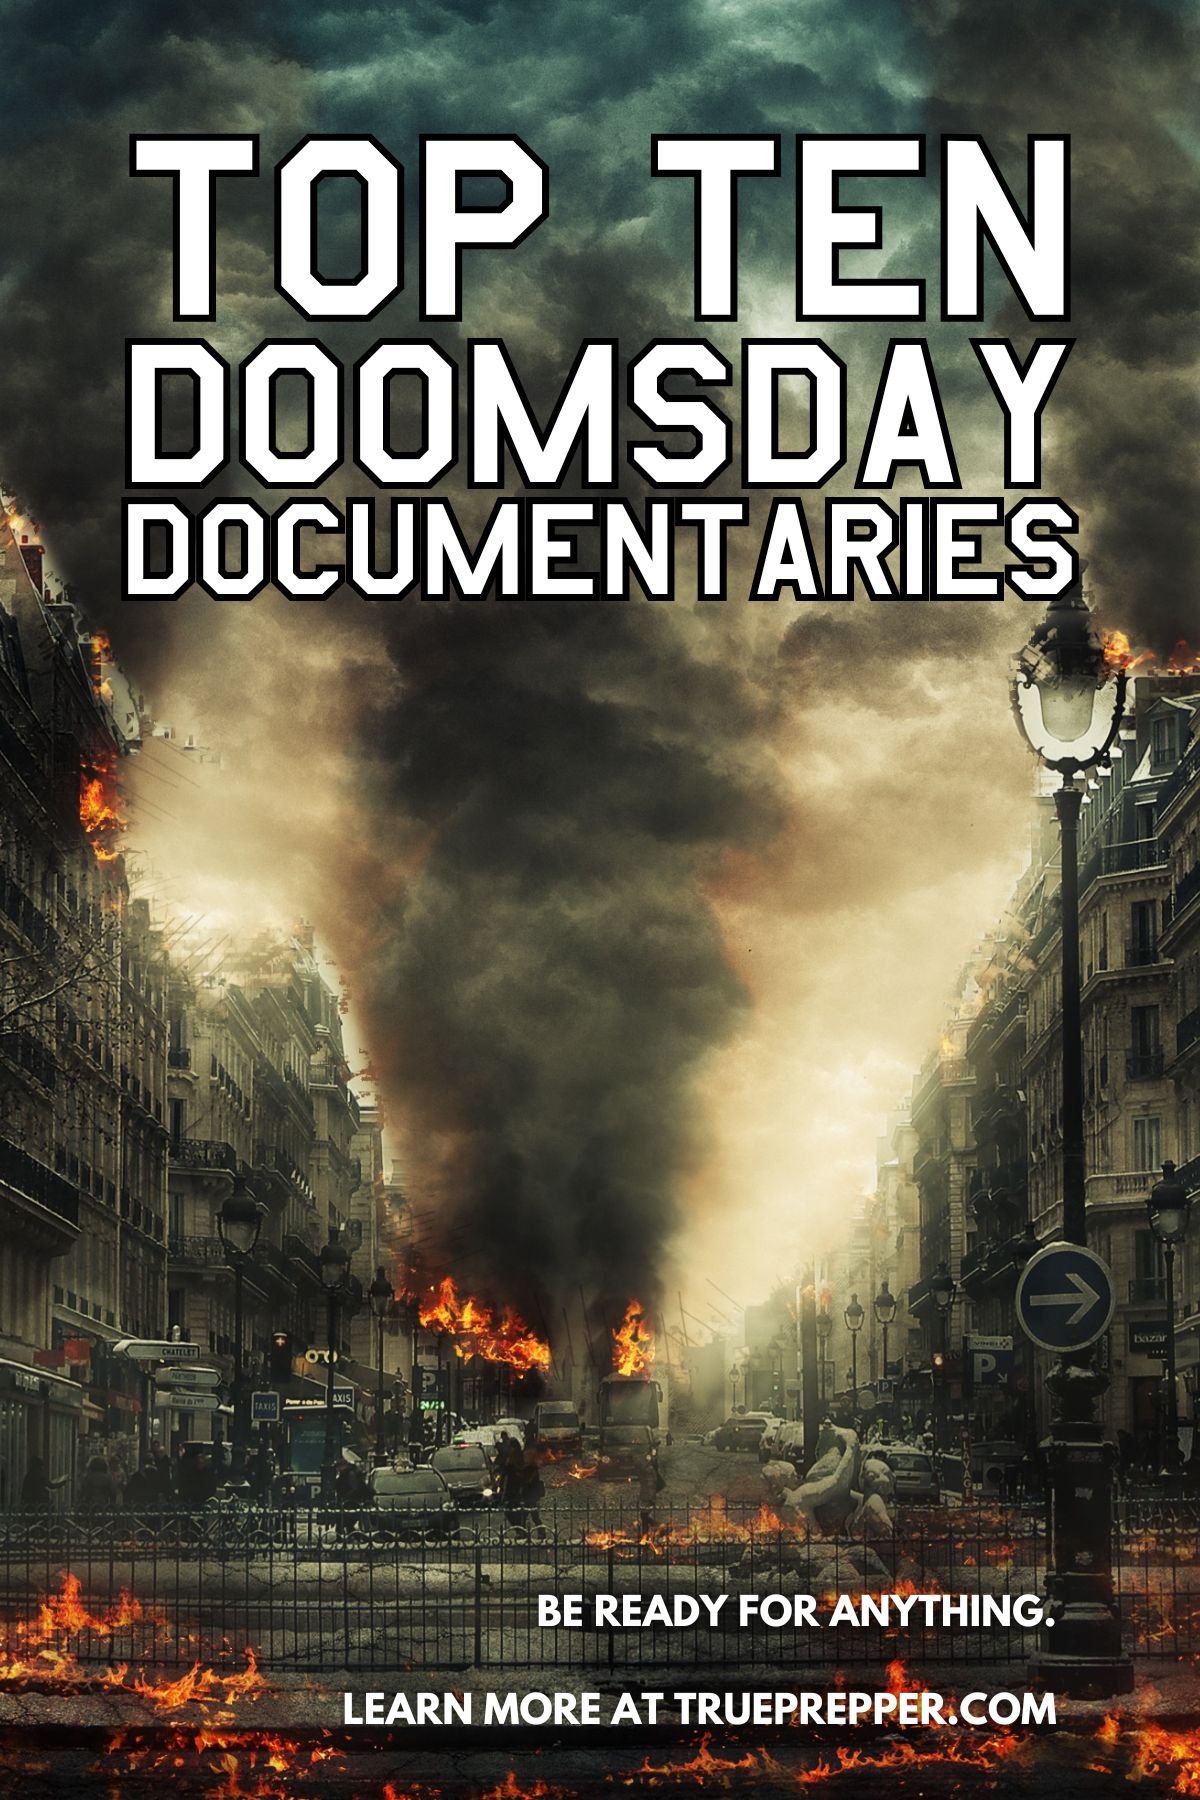 Top 10 Doomsday Documentaries